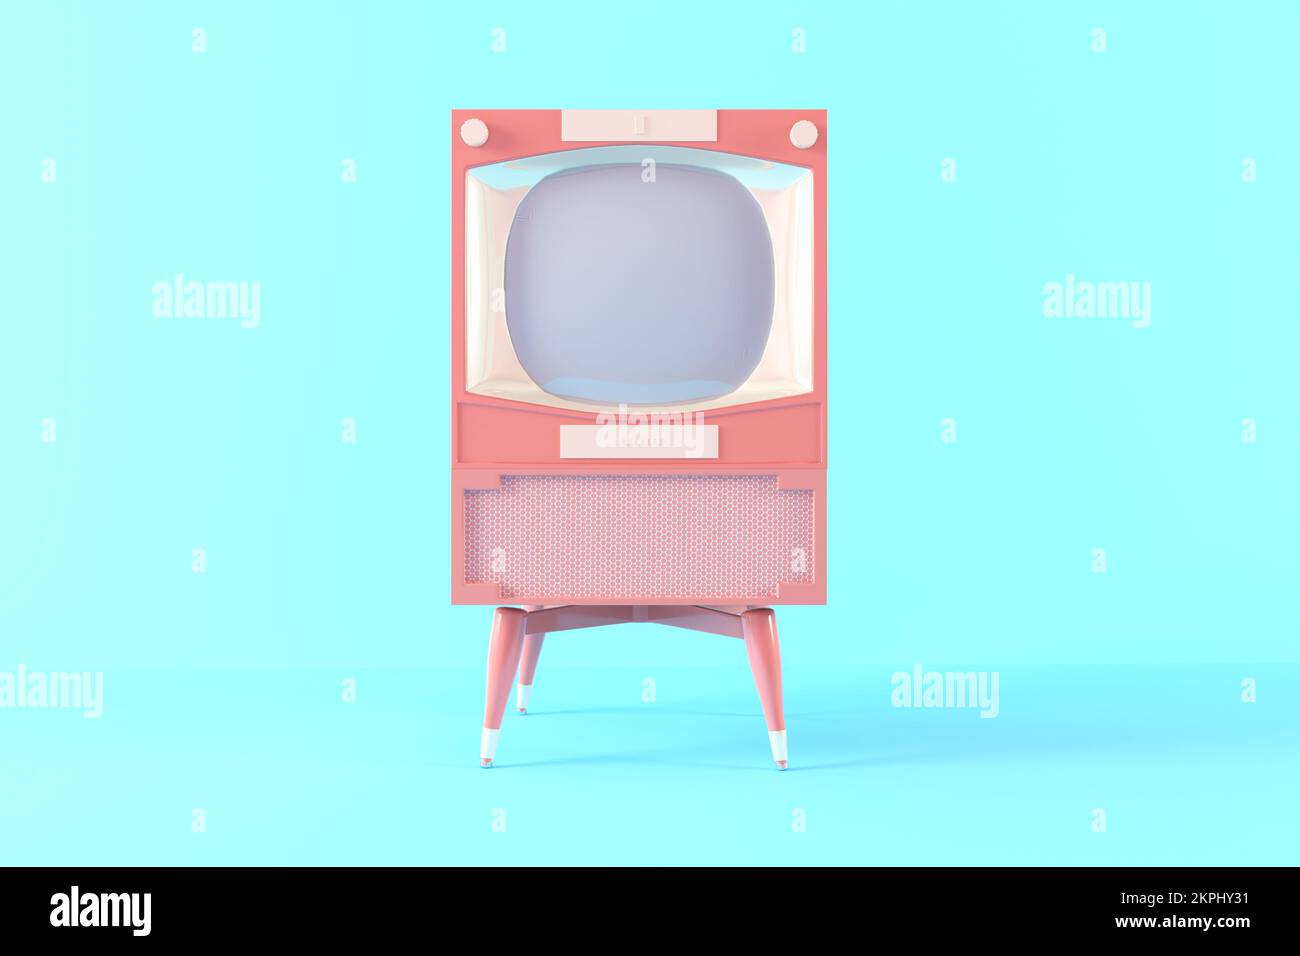 3d pink retro television on blue background, vintage old tv receiver, vintage analog TV. 3d render illustration, minimal concept. Stock Photo